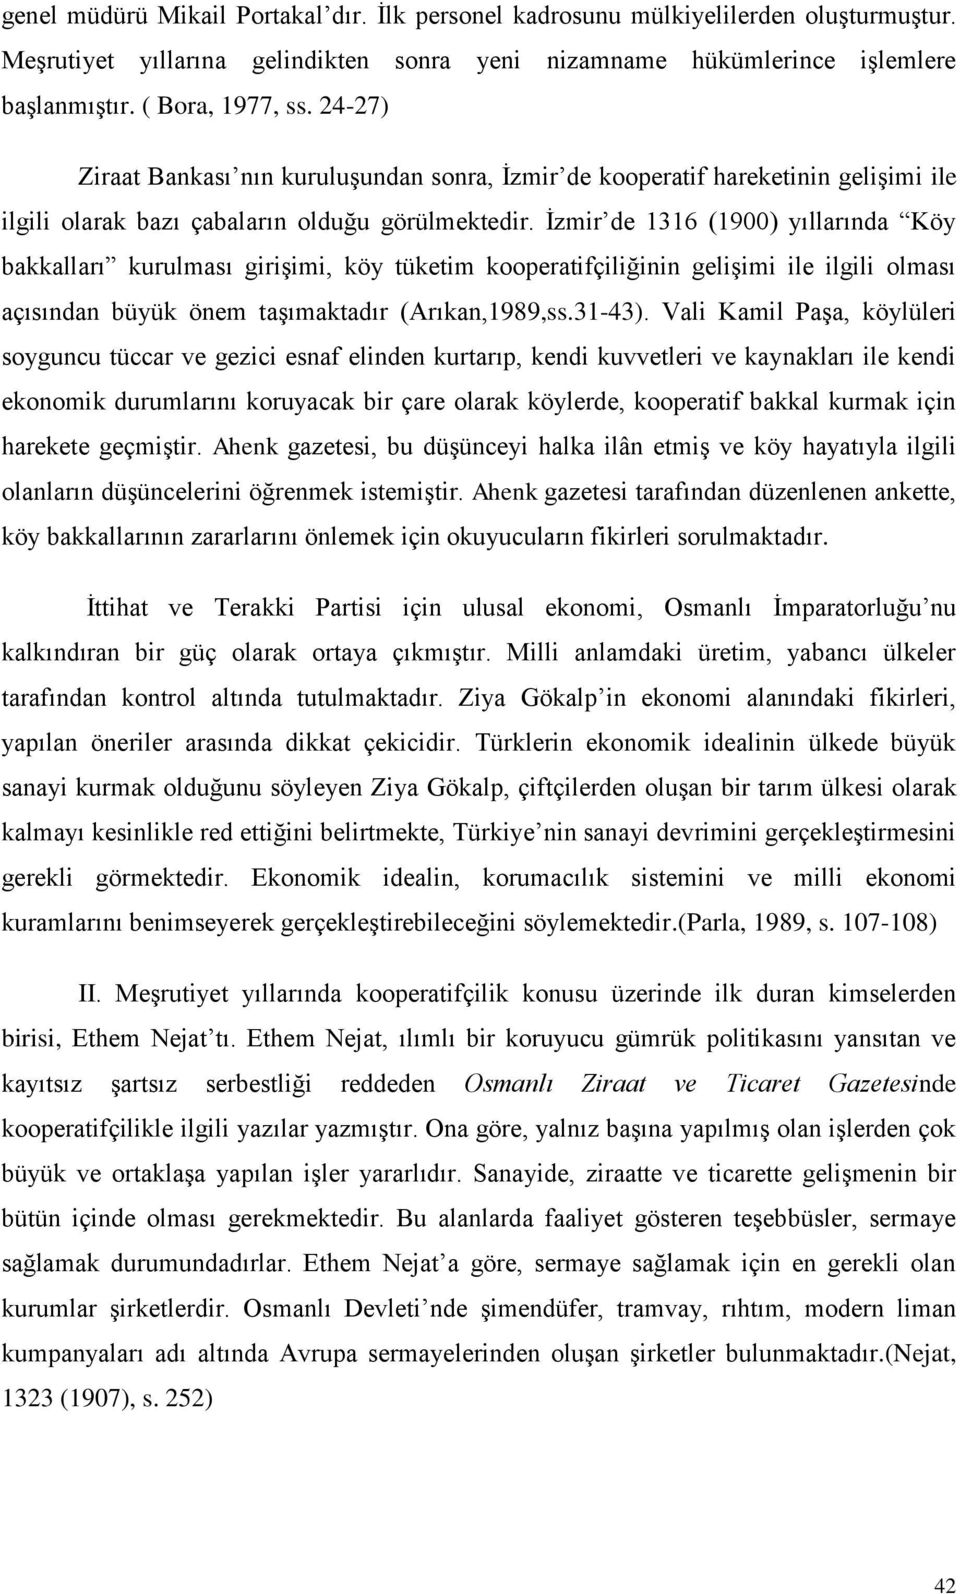 Ġzmir de 1316 (1900) yıllarında Köy bakkalları kurulması giriģimi, köy tüketim kooperatifçiliğinin geliģimi ile ilgili olması açısından büyük önem taģımaktadır (Arıkan,1989,ss.31-43).